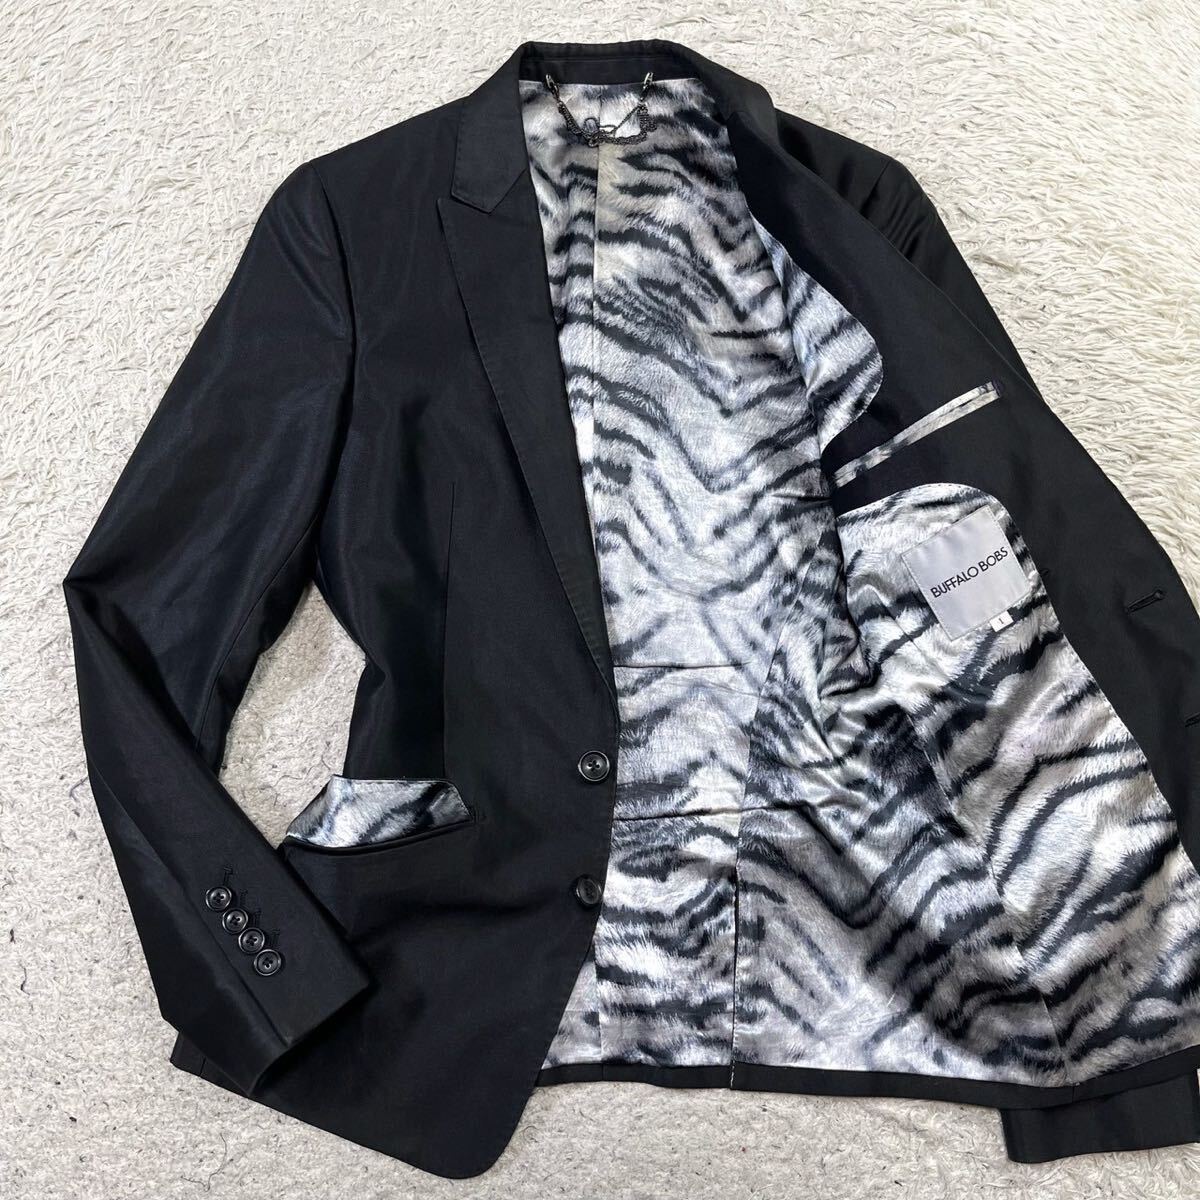  Buffalo Bob z[ подкладка . очарован один надеты ]BUFFALO BOBS tailored jacket глянец черный чёрный Zebra рисунок 